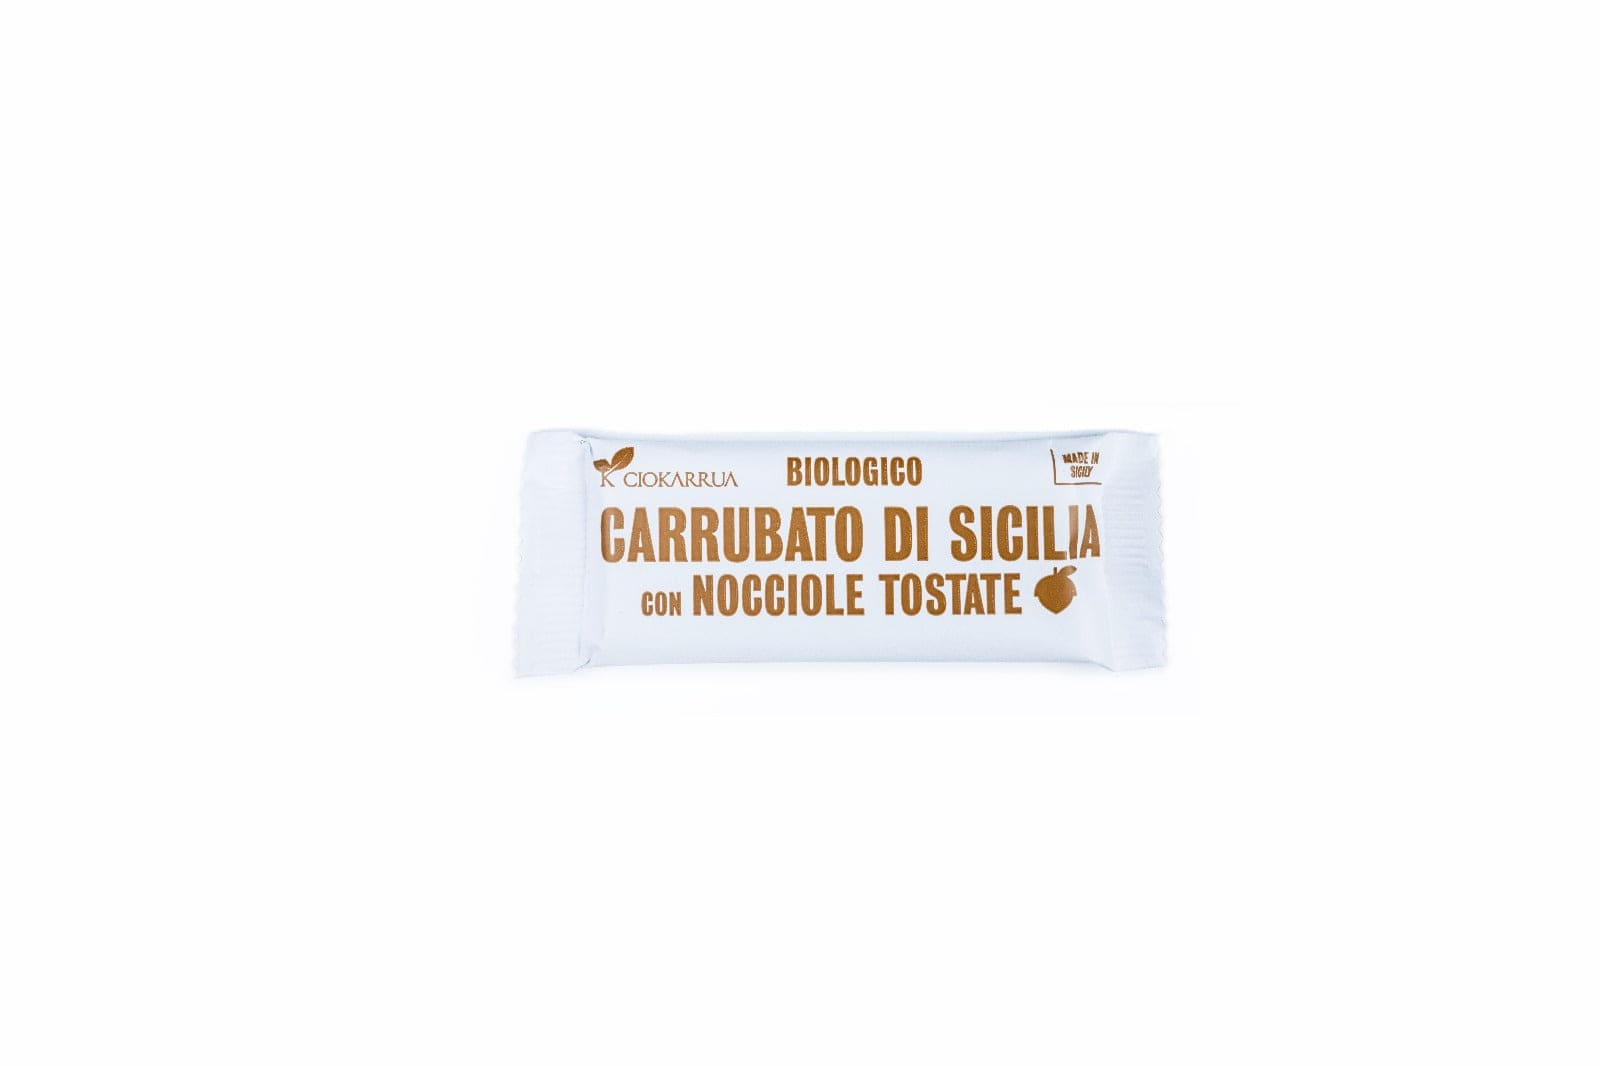 Carrubato di Sicilia Lingotto da 15g - Ciokarrua